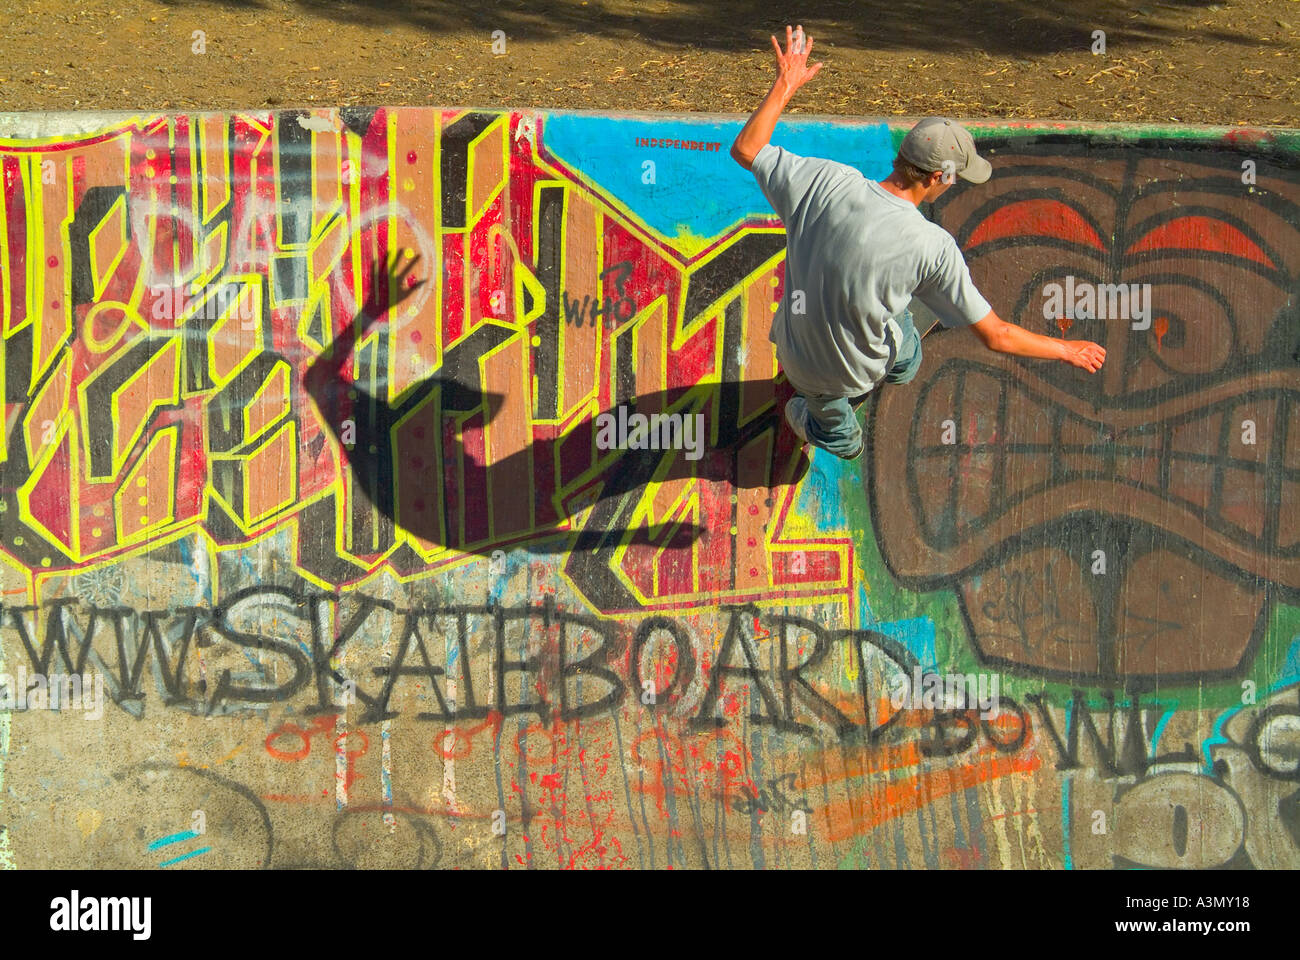 Skateboarding Stockfoto